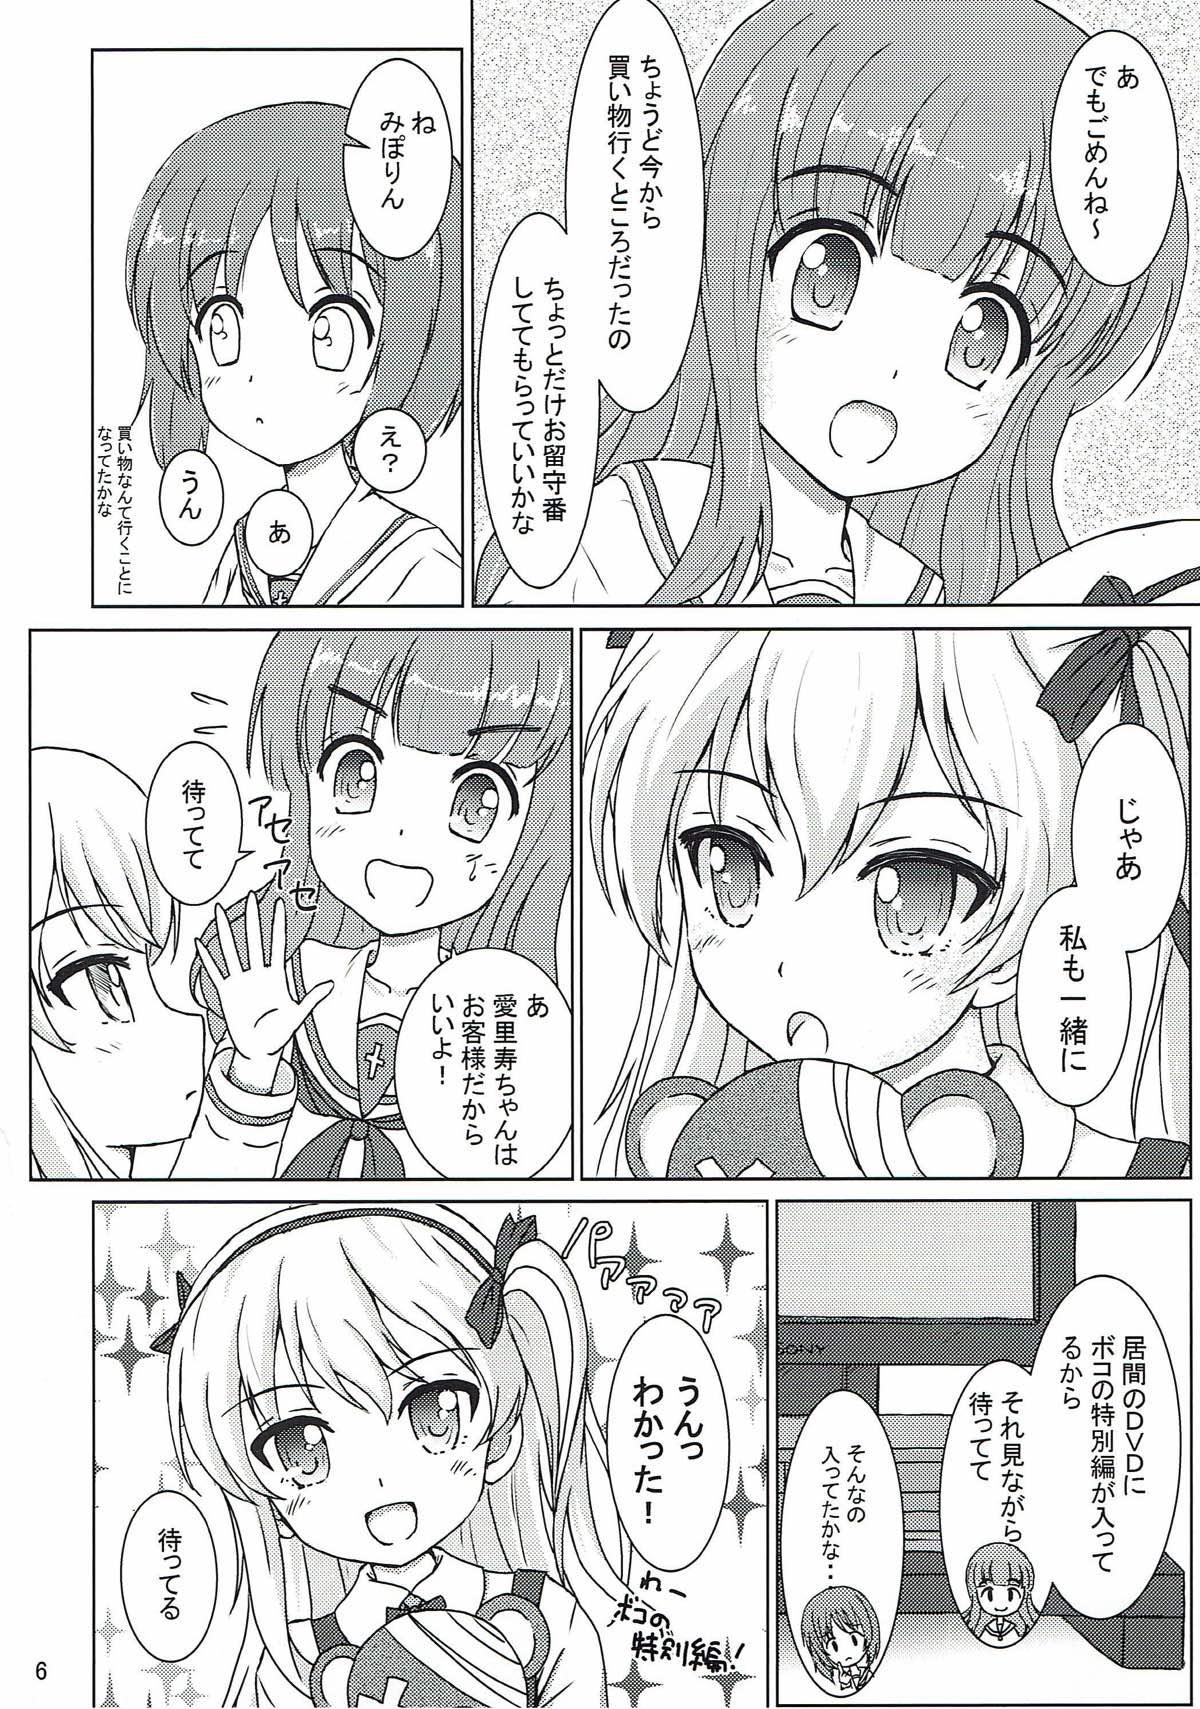 Pegging Totsugeki! Mousou Senshadou - Girls und panzer Stockings - Page 4